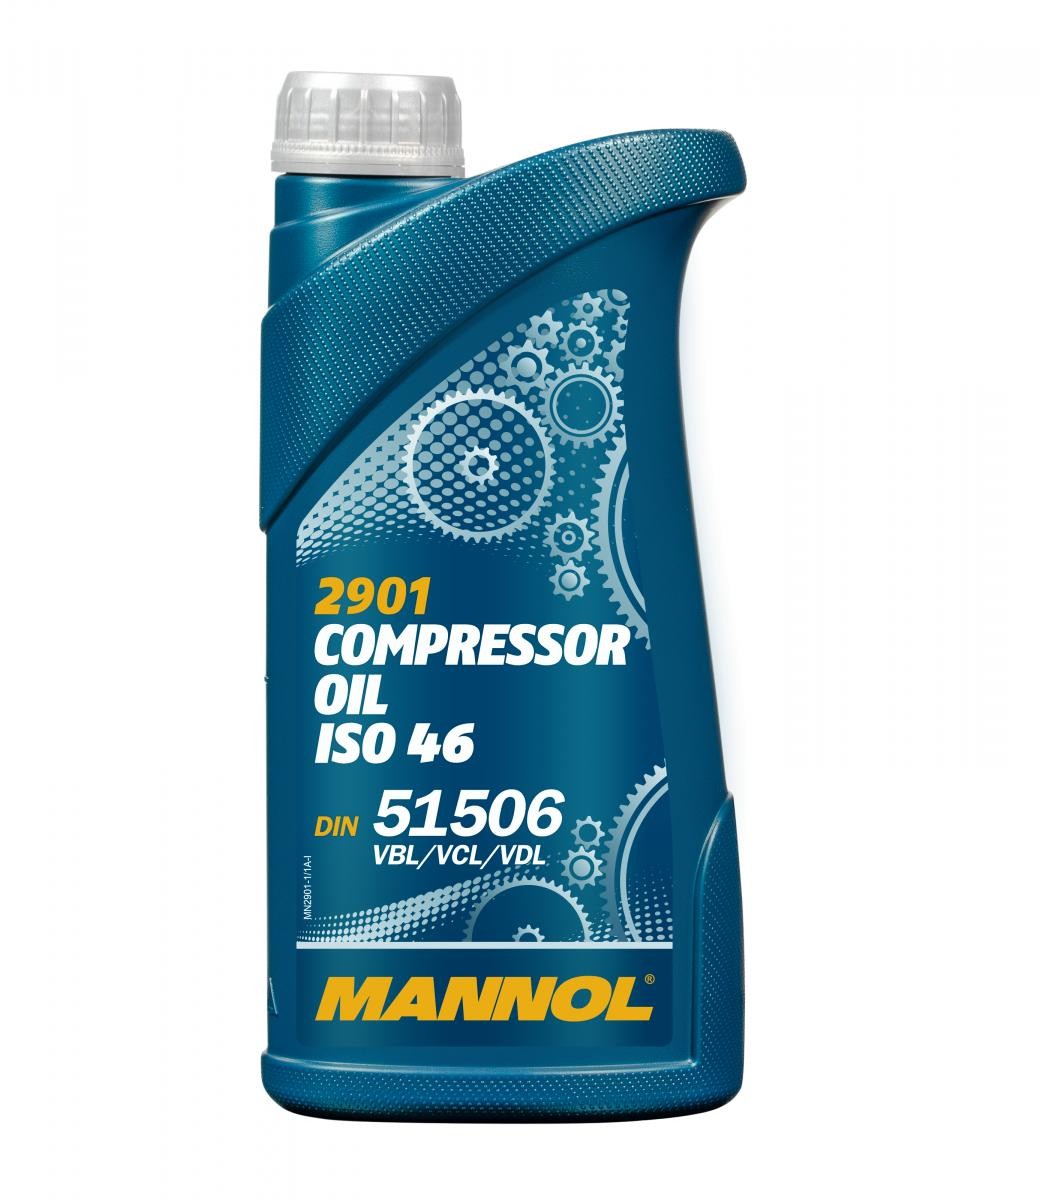 Aircon compressor MANNOL Compressor Oil ISO 46 Mineral Oil - MN2901-1